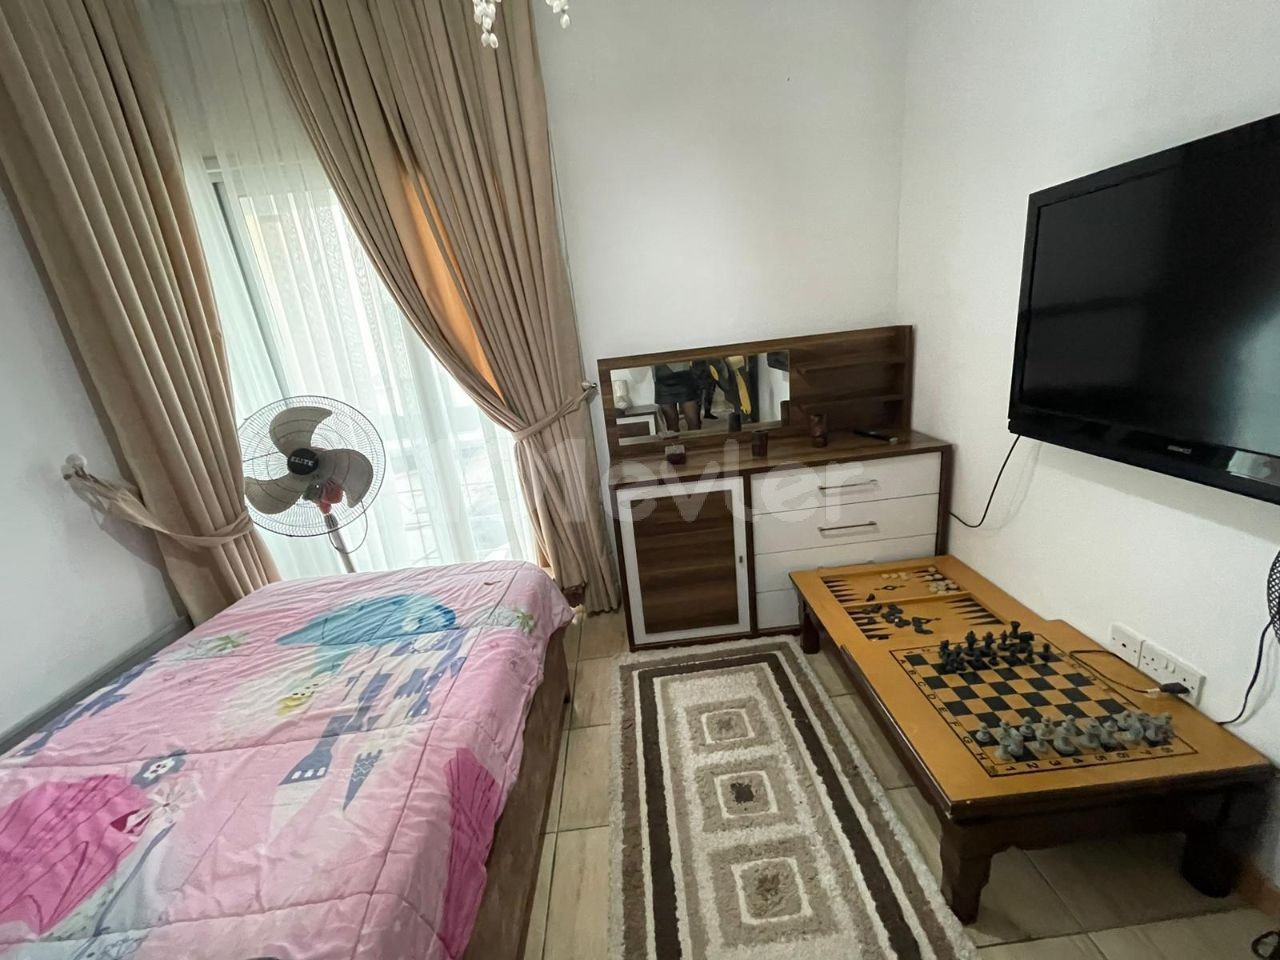 3-Zimmer-Wohnung in zentraler Lage in der Marmara Region zu VERKAUFEN!